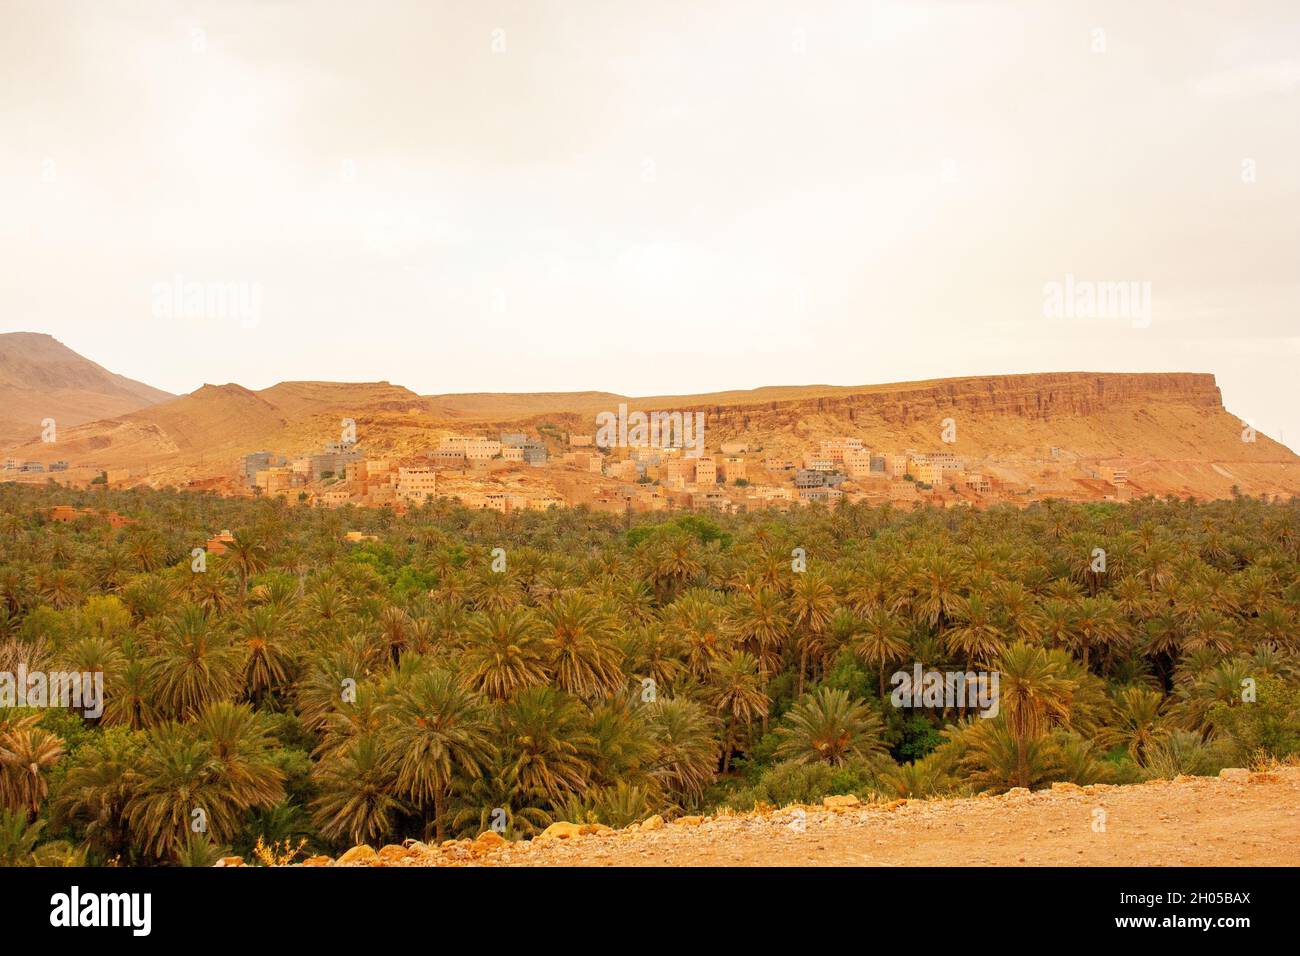 Oasis et paysage du désert du Sahara photographiés au Maroc Banque D'Images